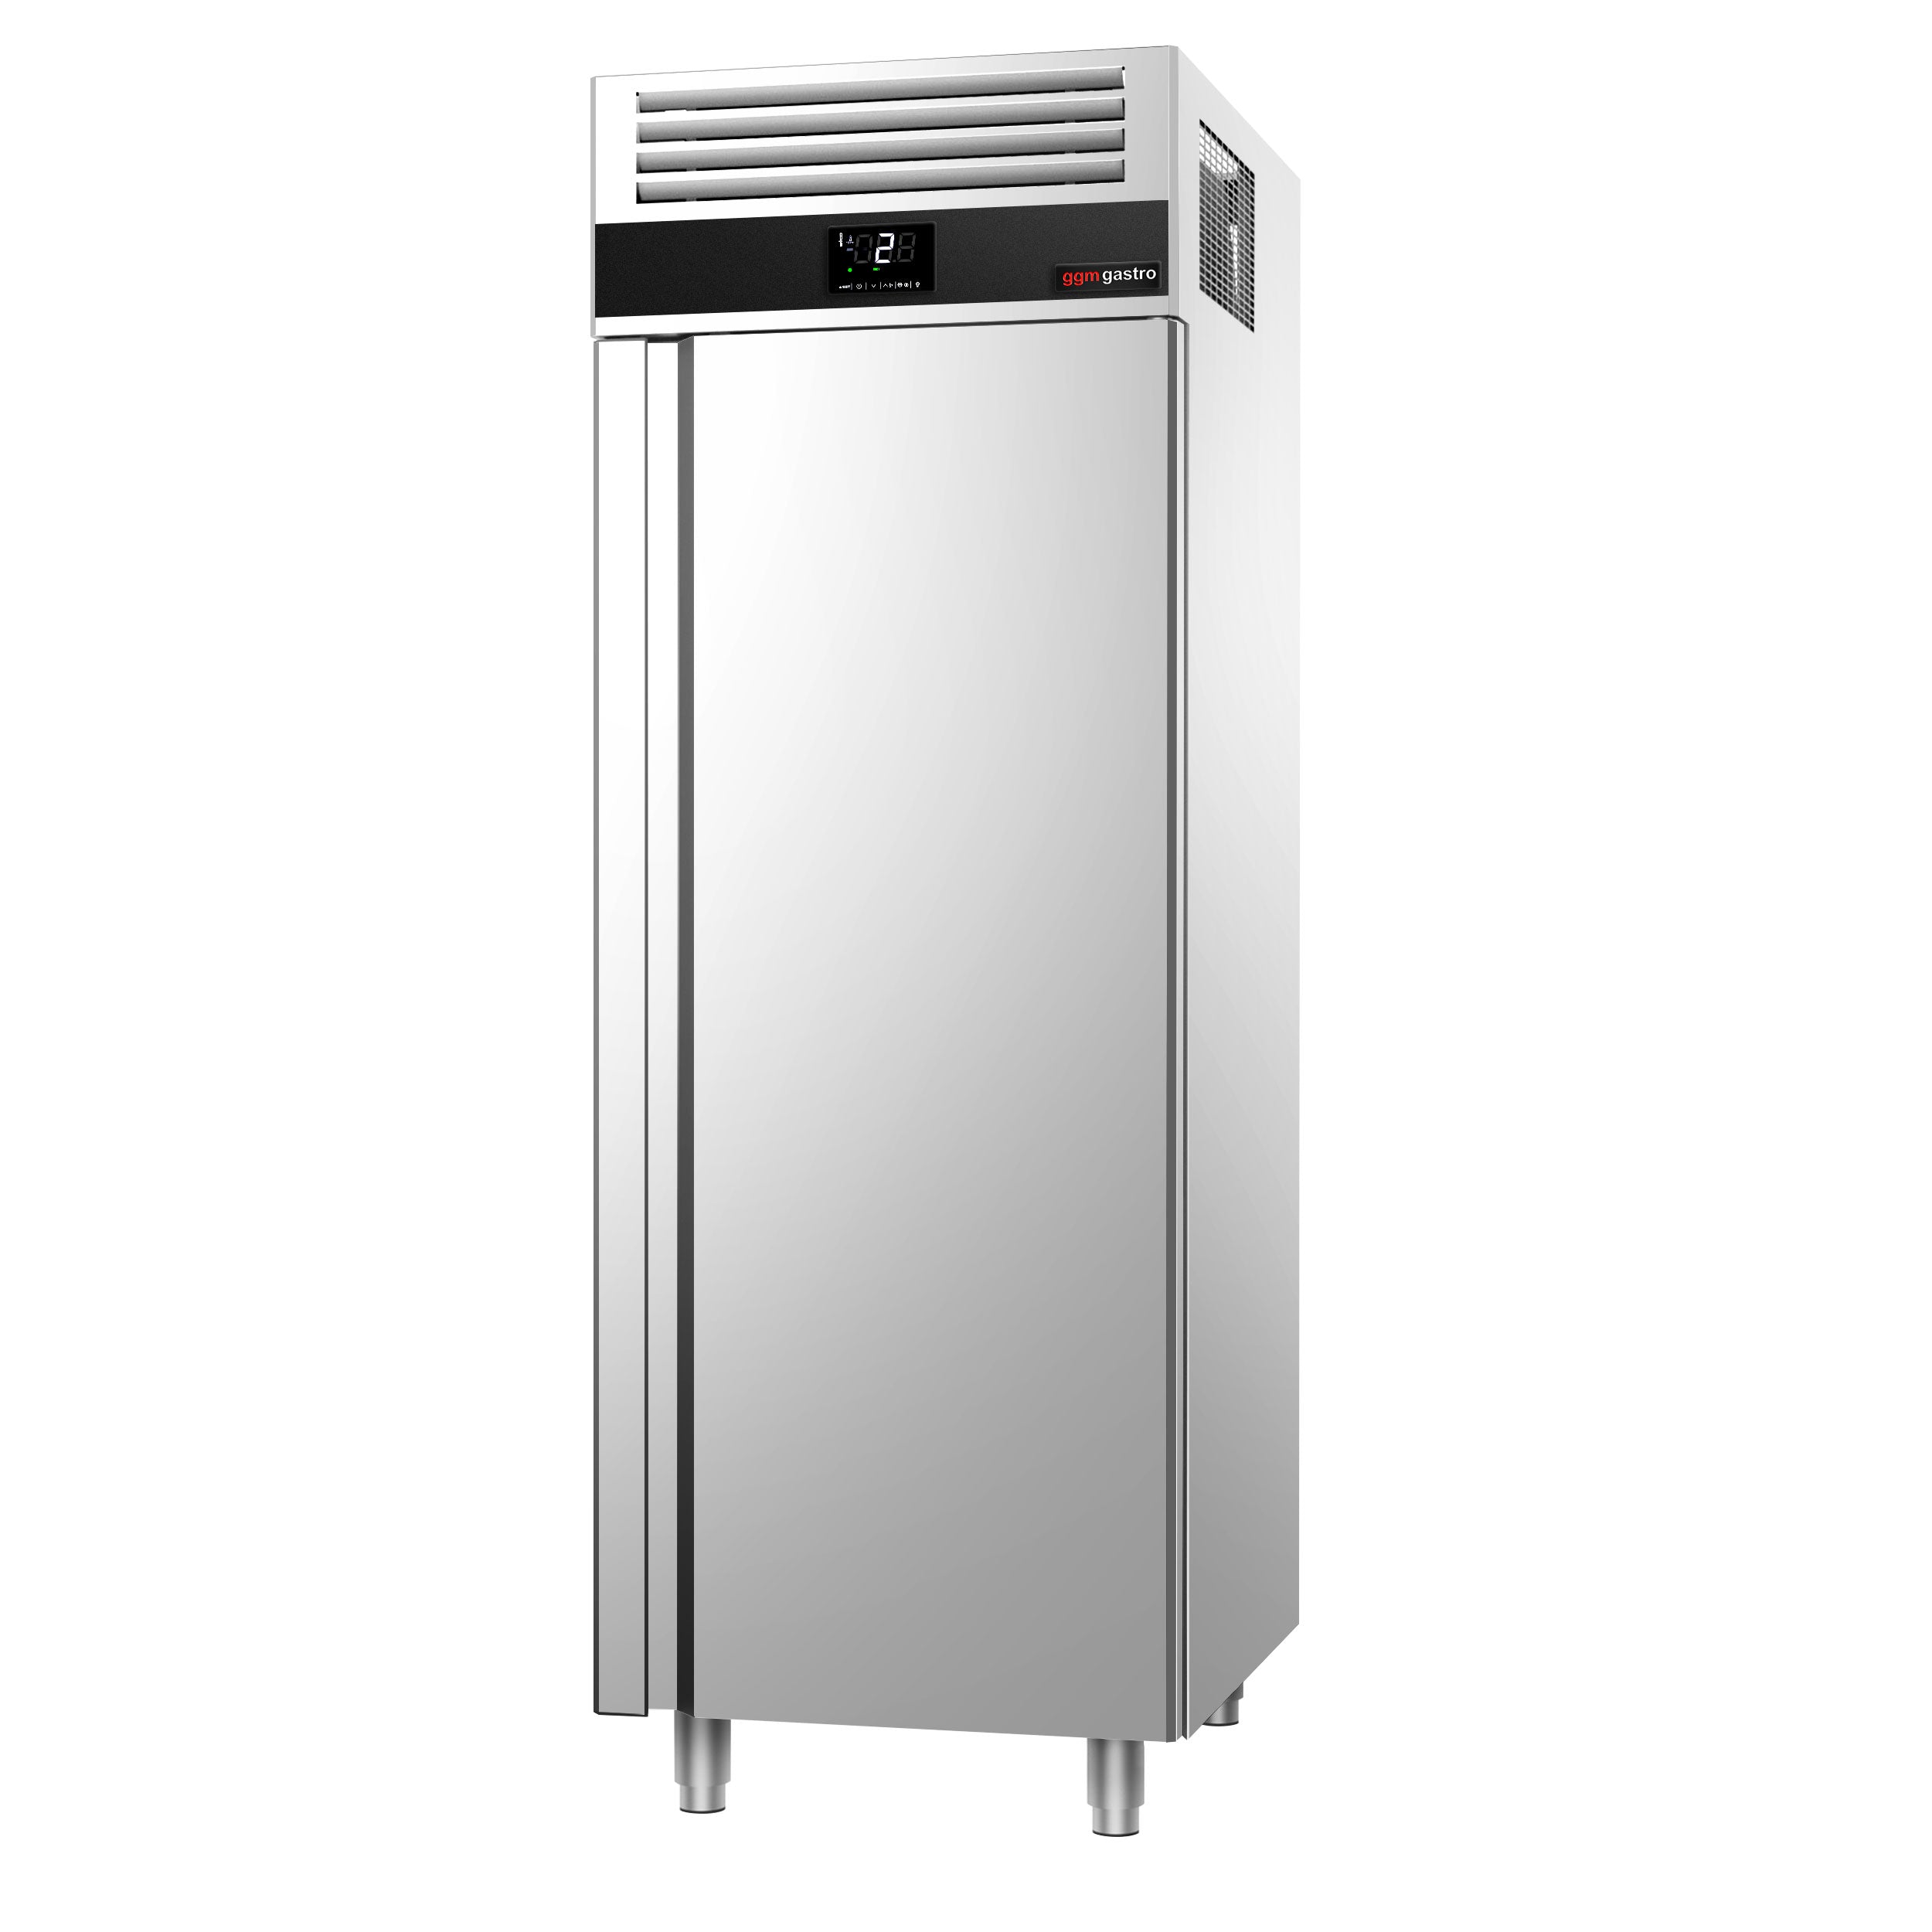 Køleskab - 0,7 x 0,81 m - 700 liter - med 1 låge